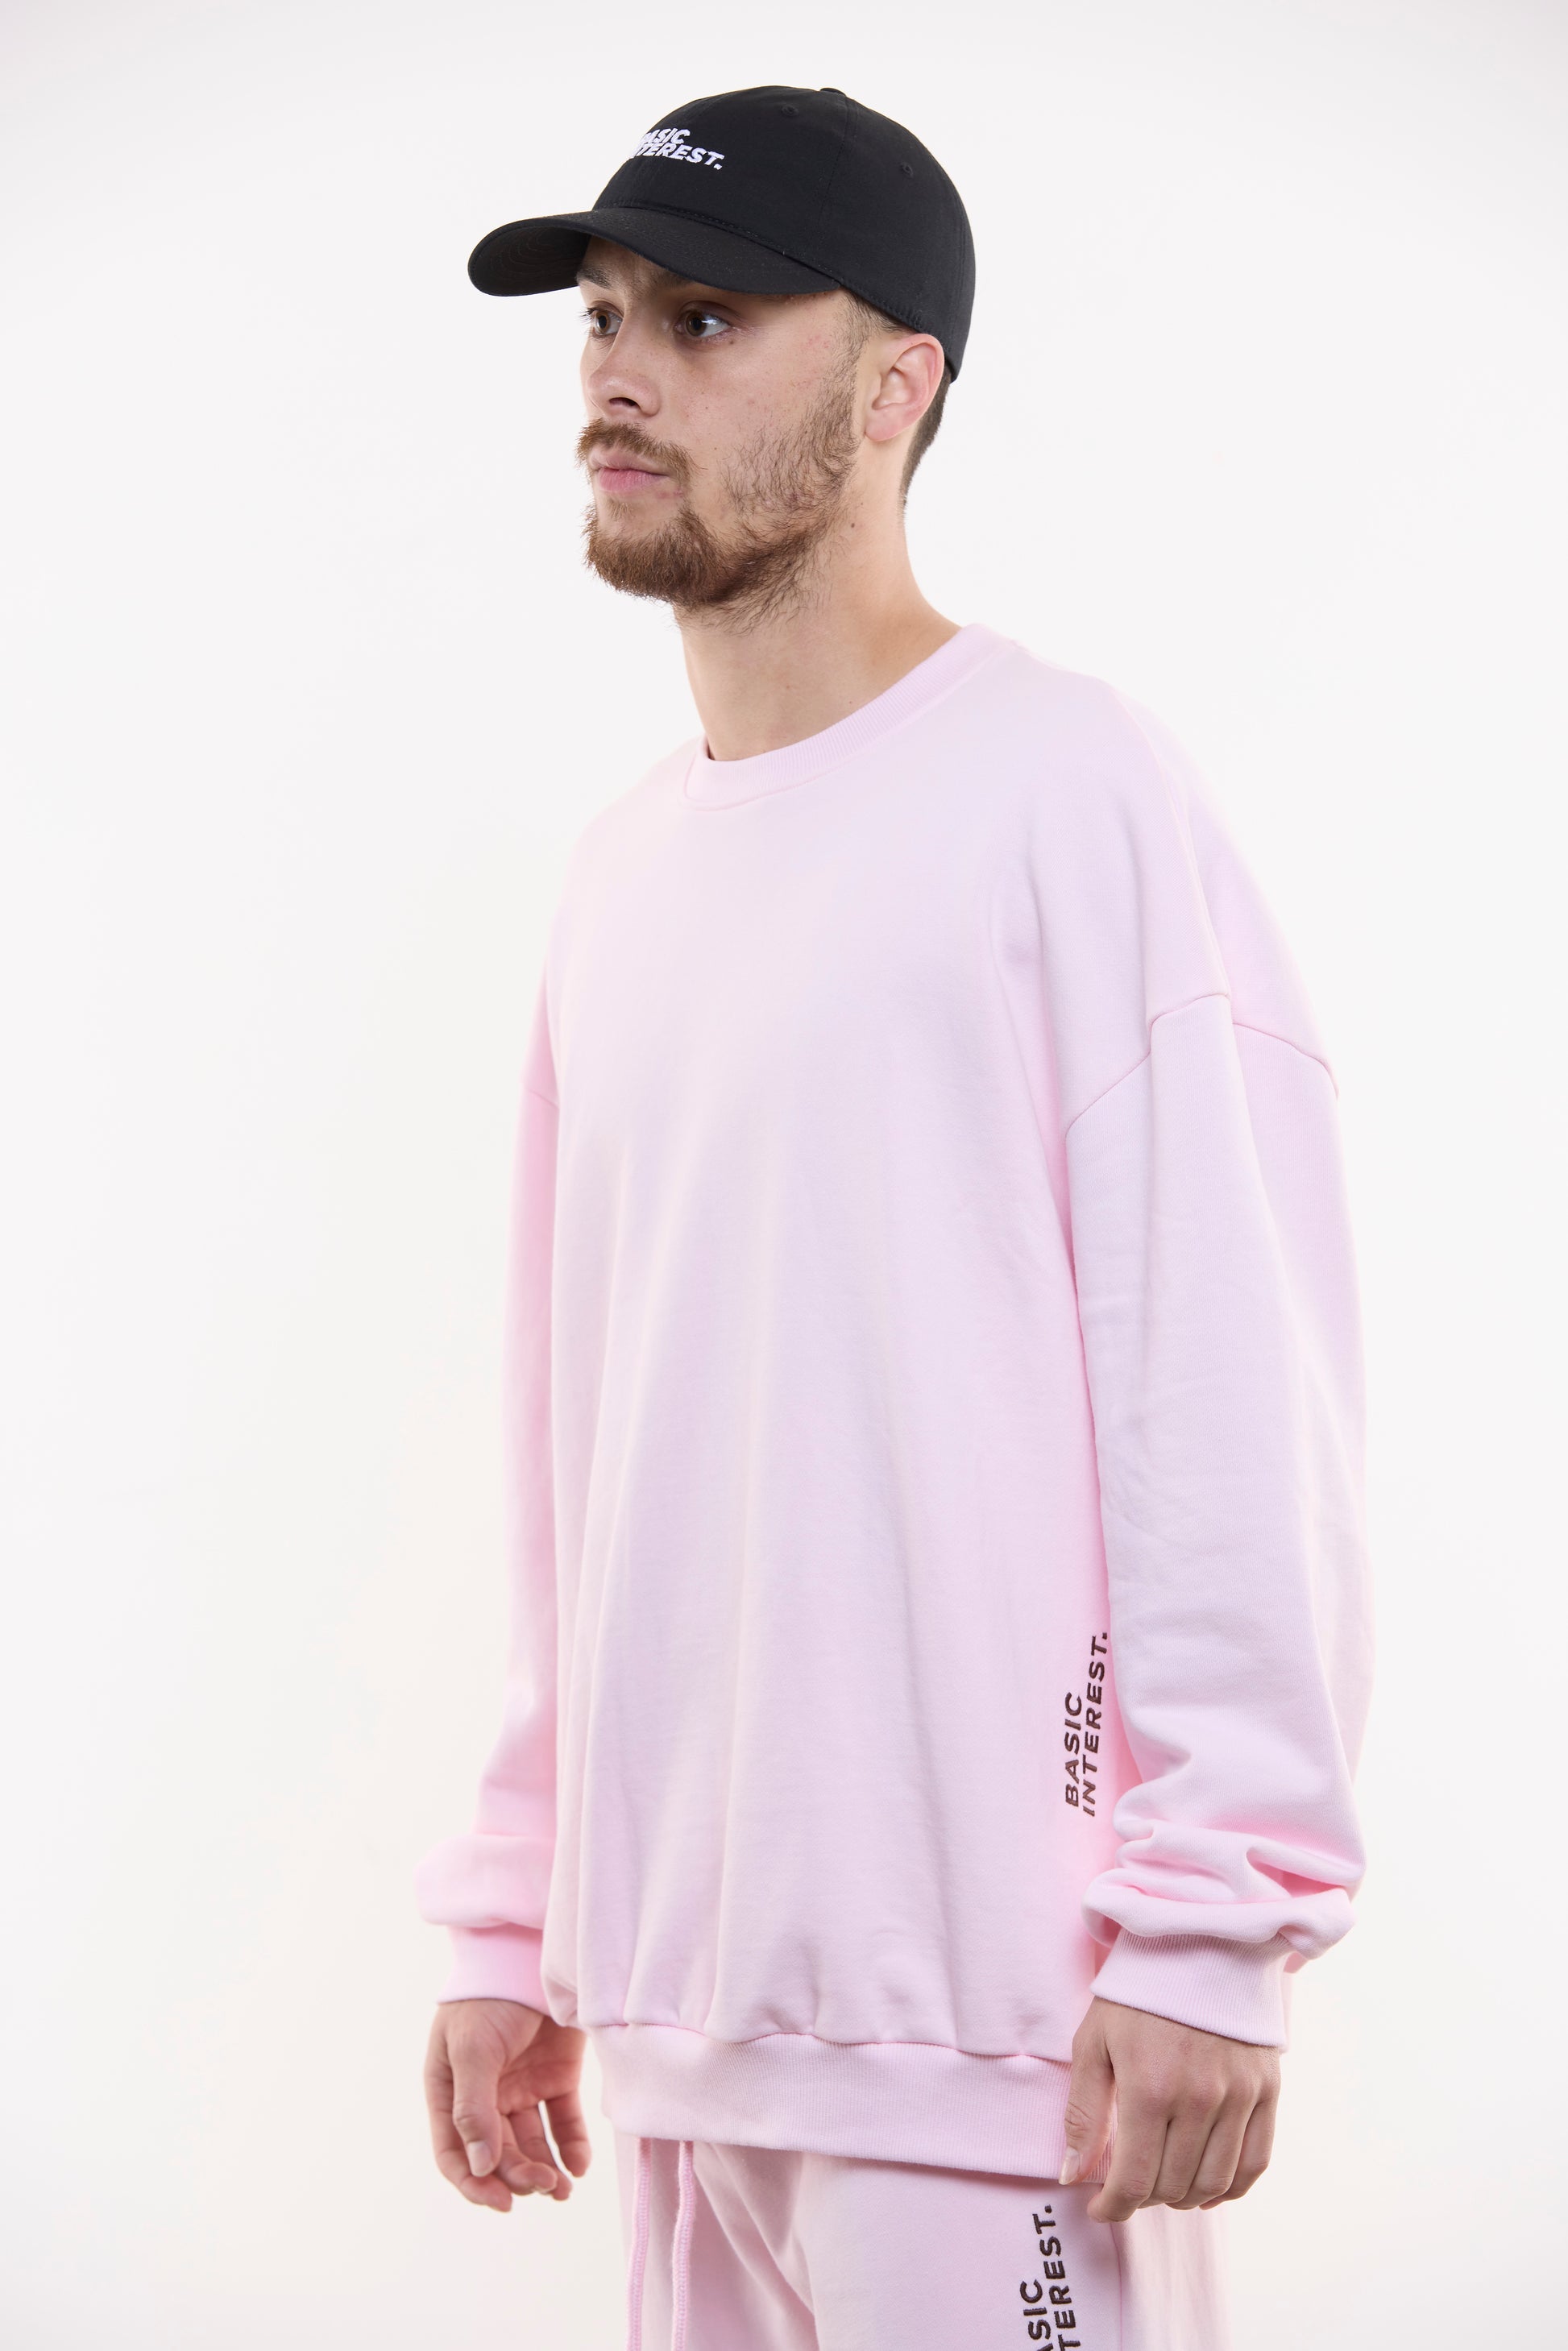 Blush pink oversized crewneck sweatshirt with black BASIC INTEREST embroidery